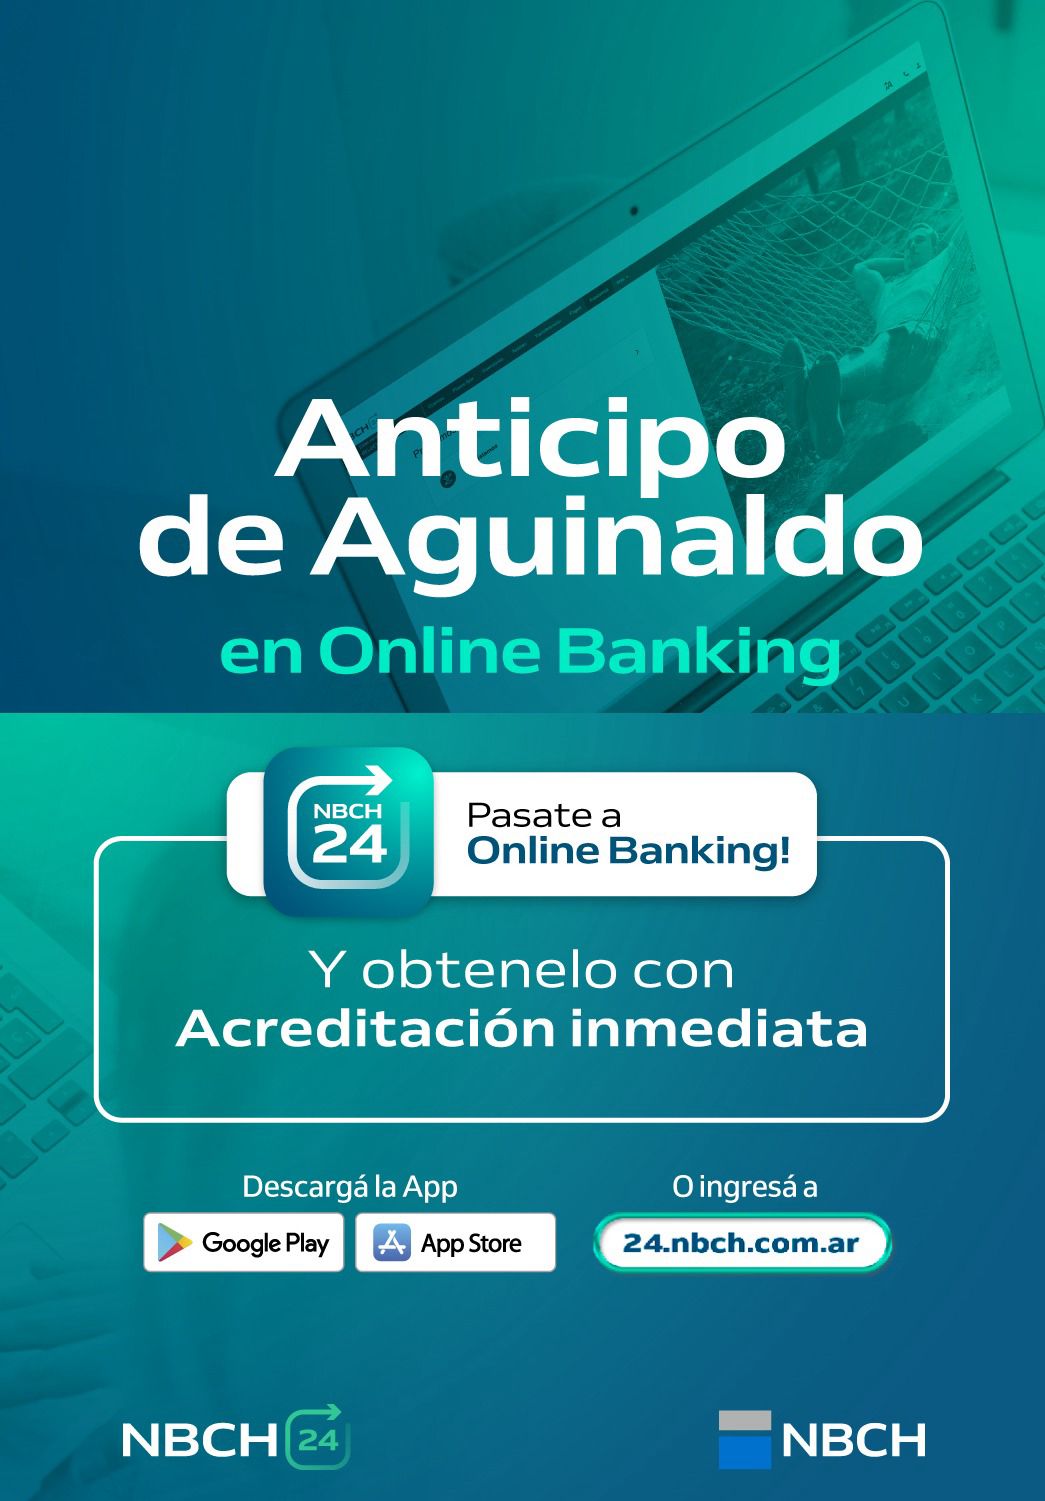 *EL ANTICIPO DE AGUINALDO YA SE PUEDE SOLICITAR EN ONLINE BANKING*